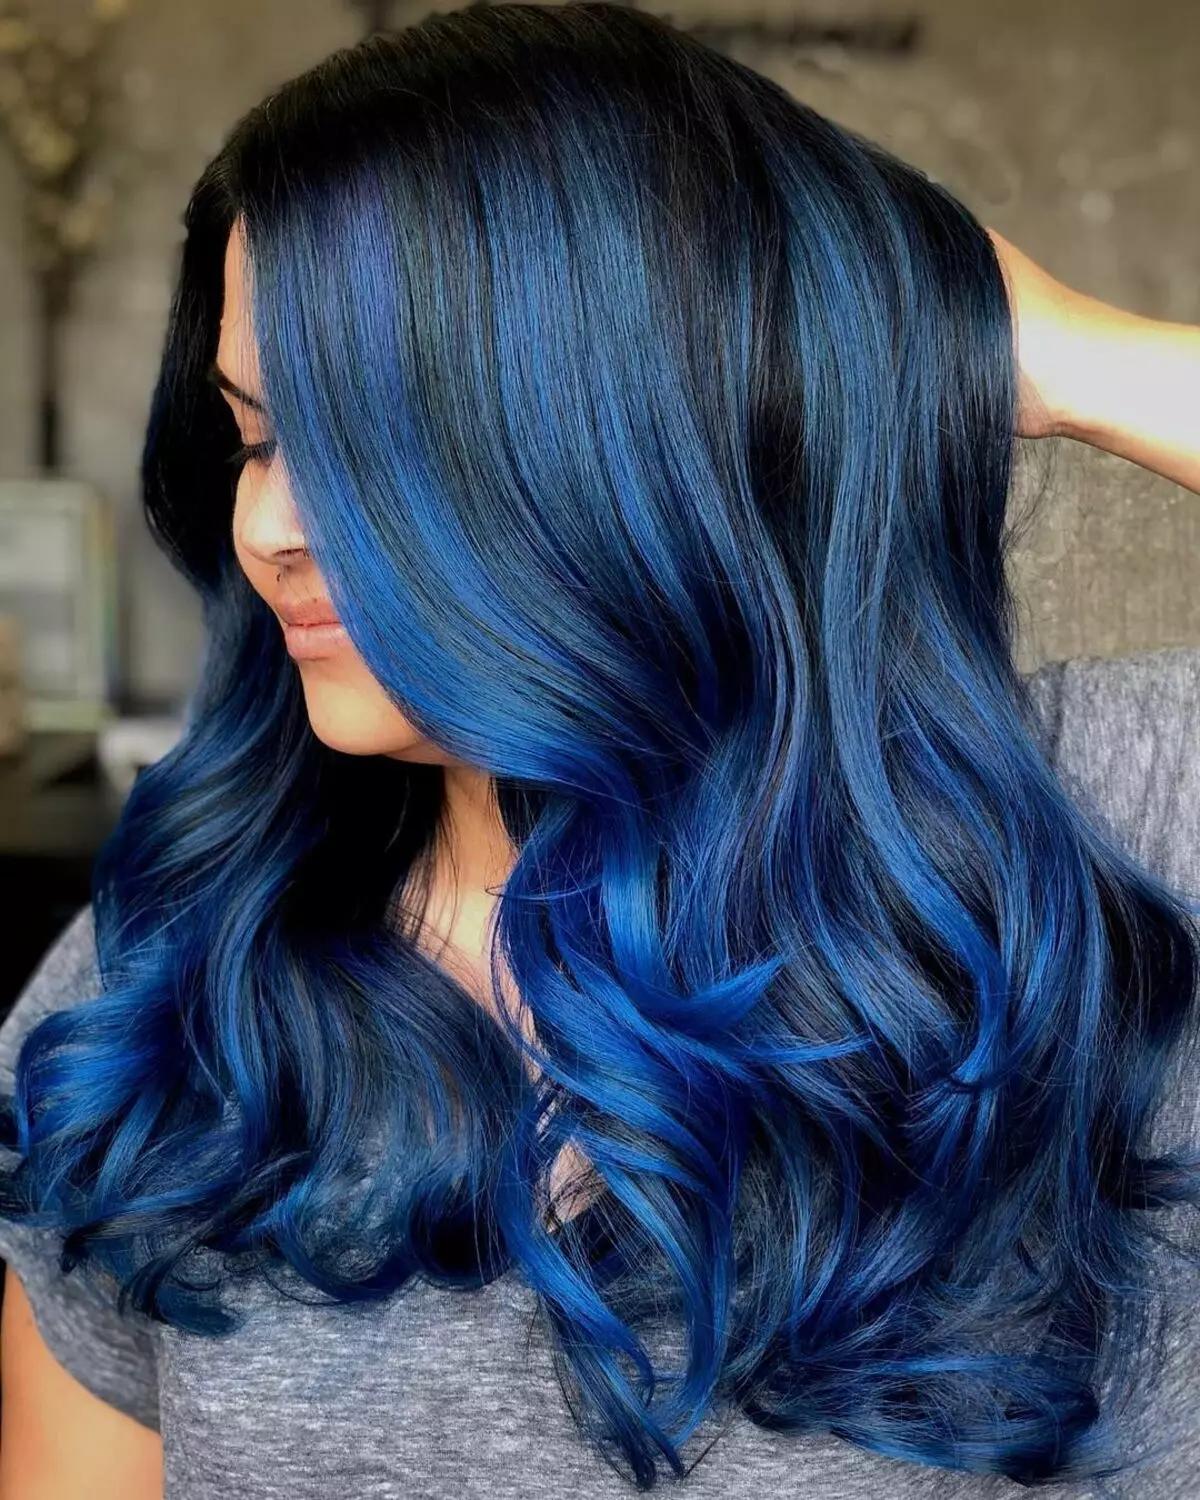 رنگ مو آبی: مرور کلی رنگ های مقاوم در برابر رنگ با سوزن آبی، از آبی روشن به سایه های سیاه و سفید 5402_4